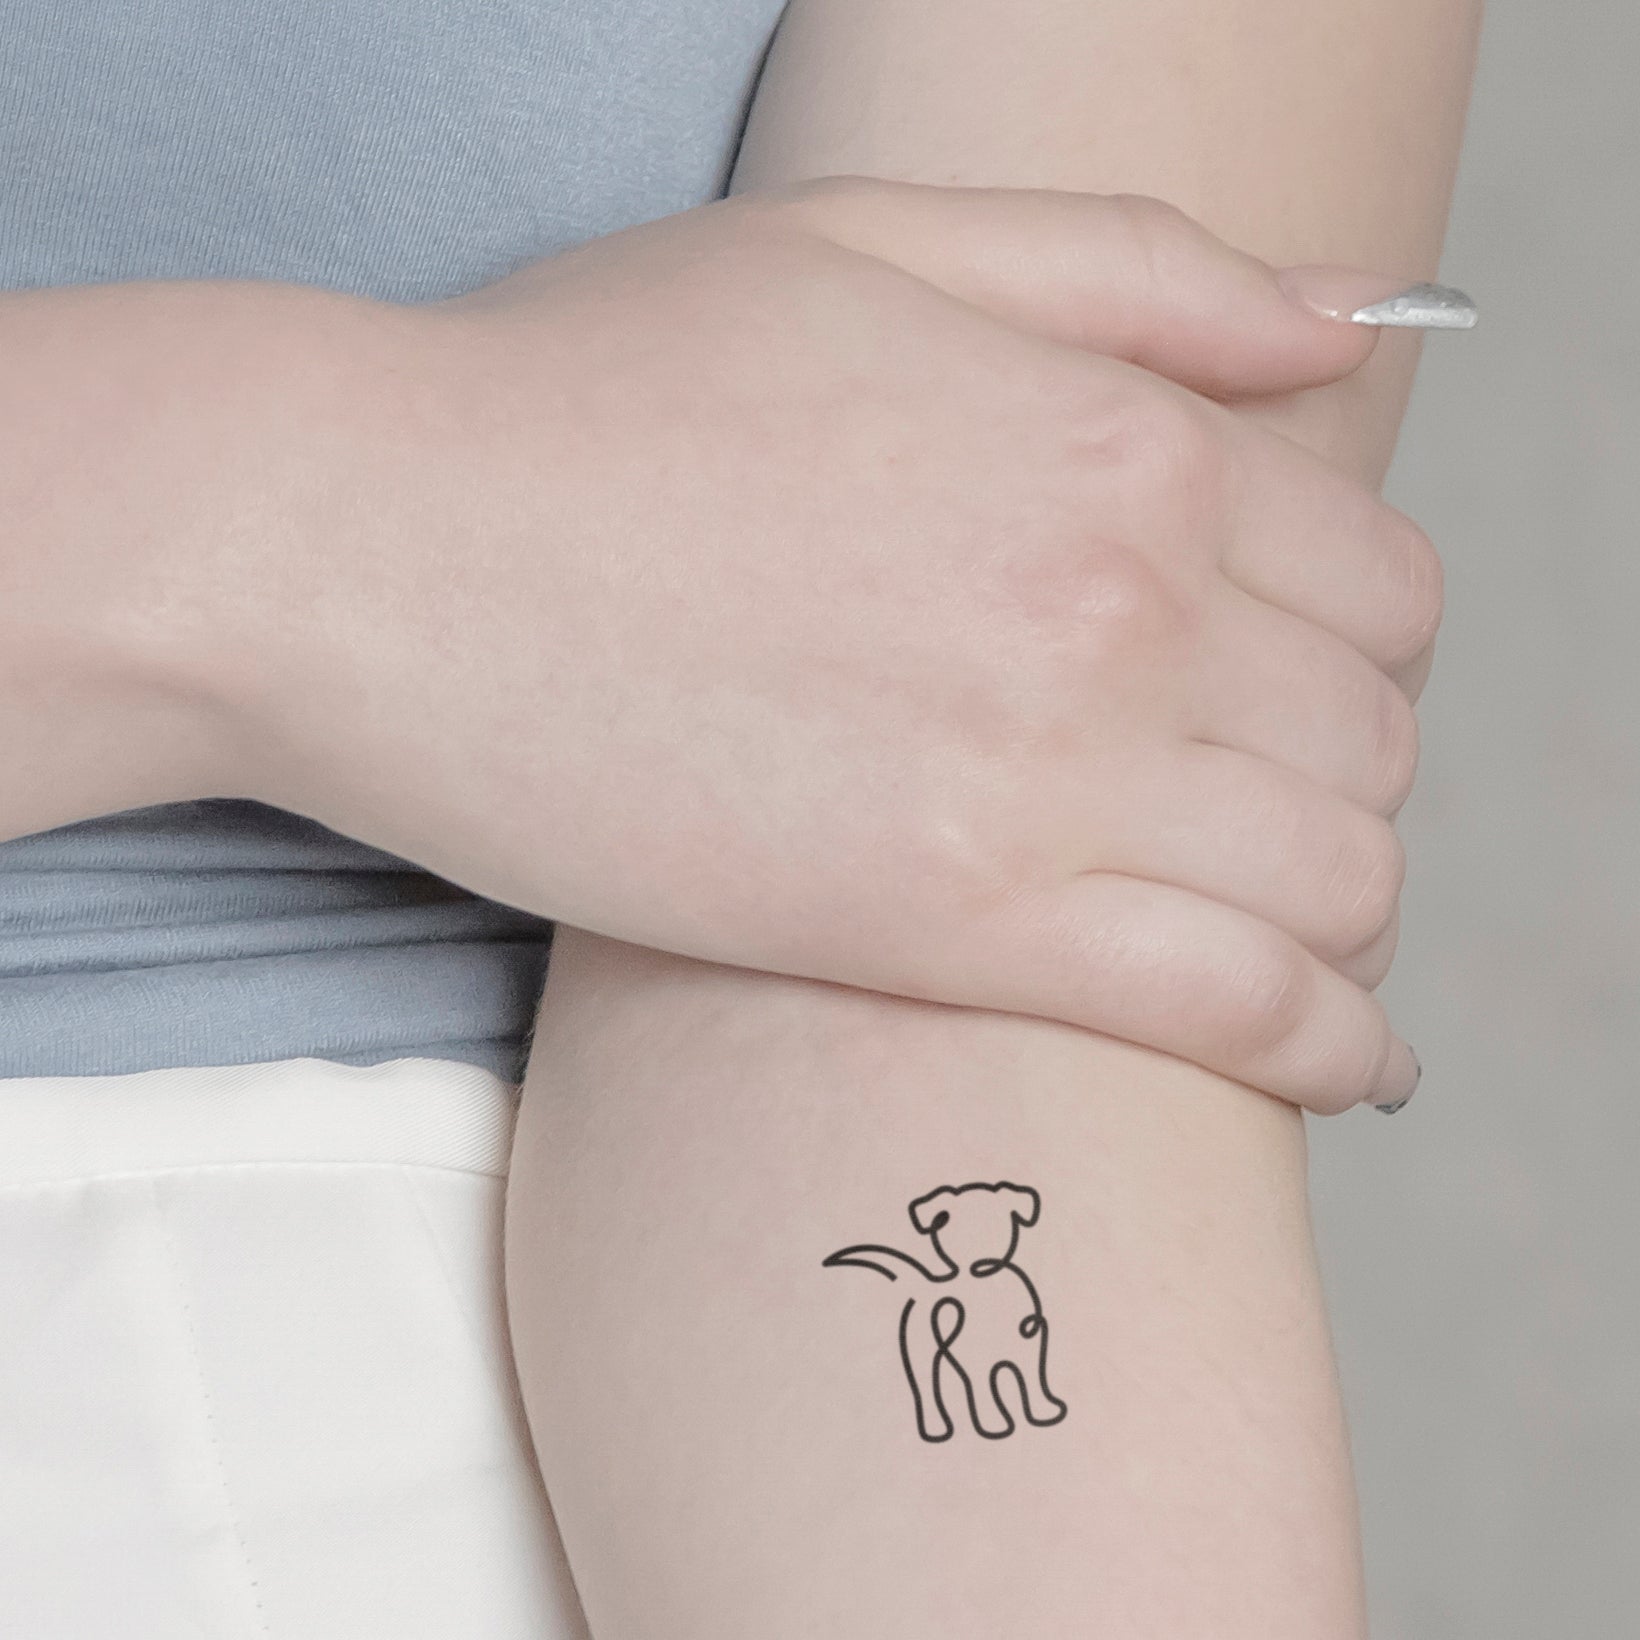 Abstrakter Hund Tattoo von minink, der Marke für temporäre Tattoos.